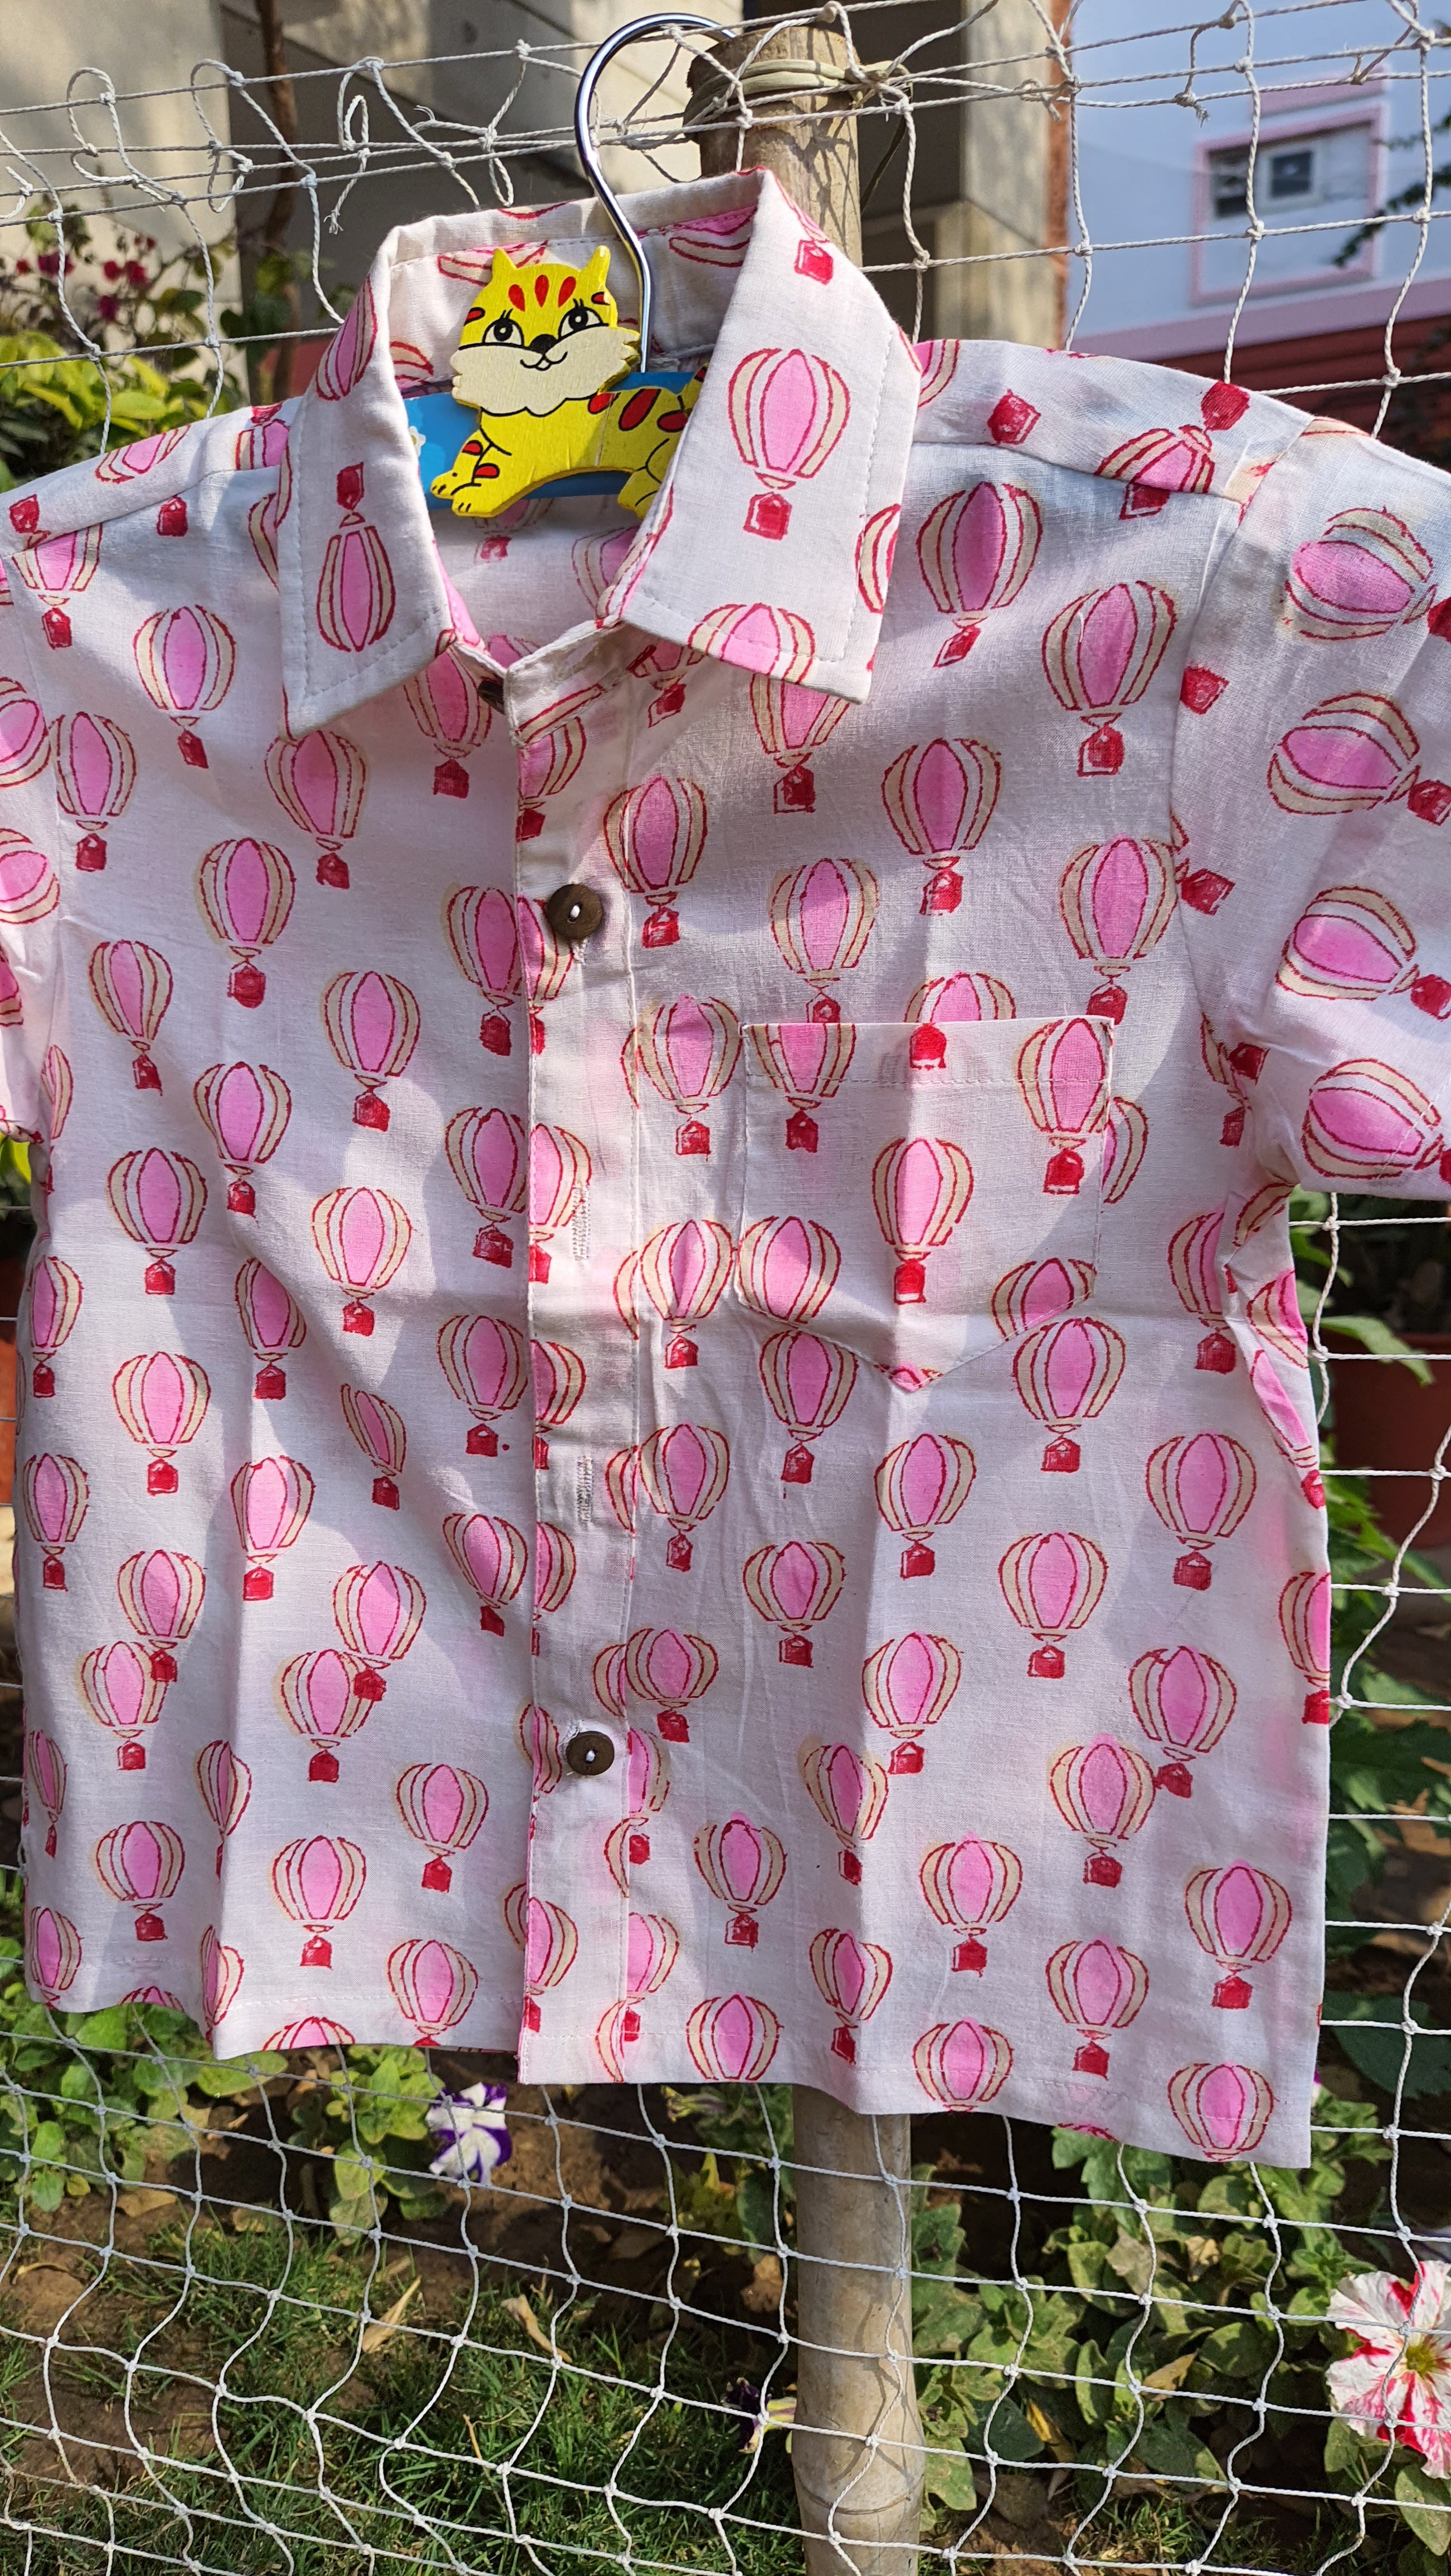 Shirt Boy Hot Air Balloon Pink